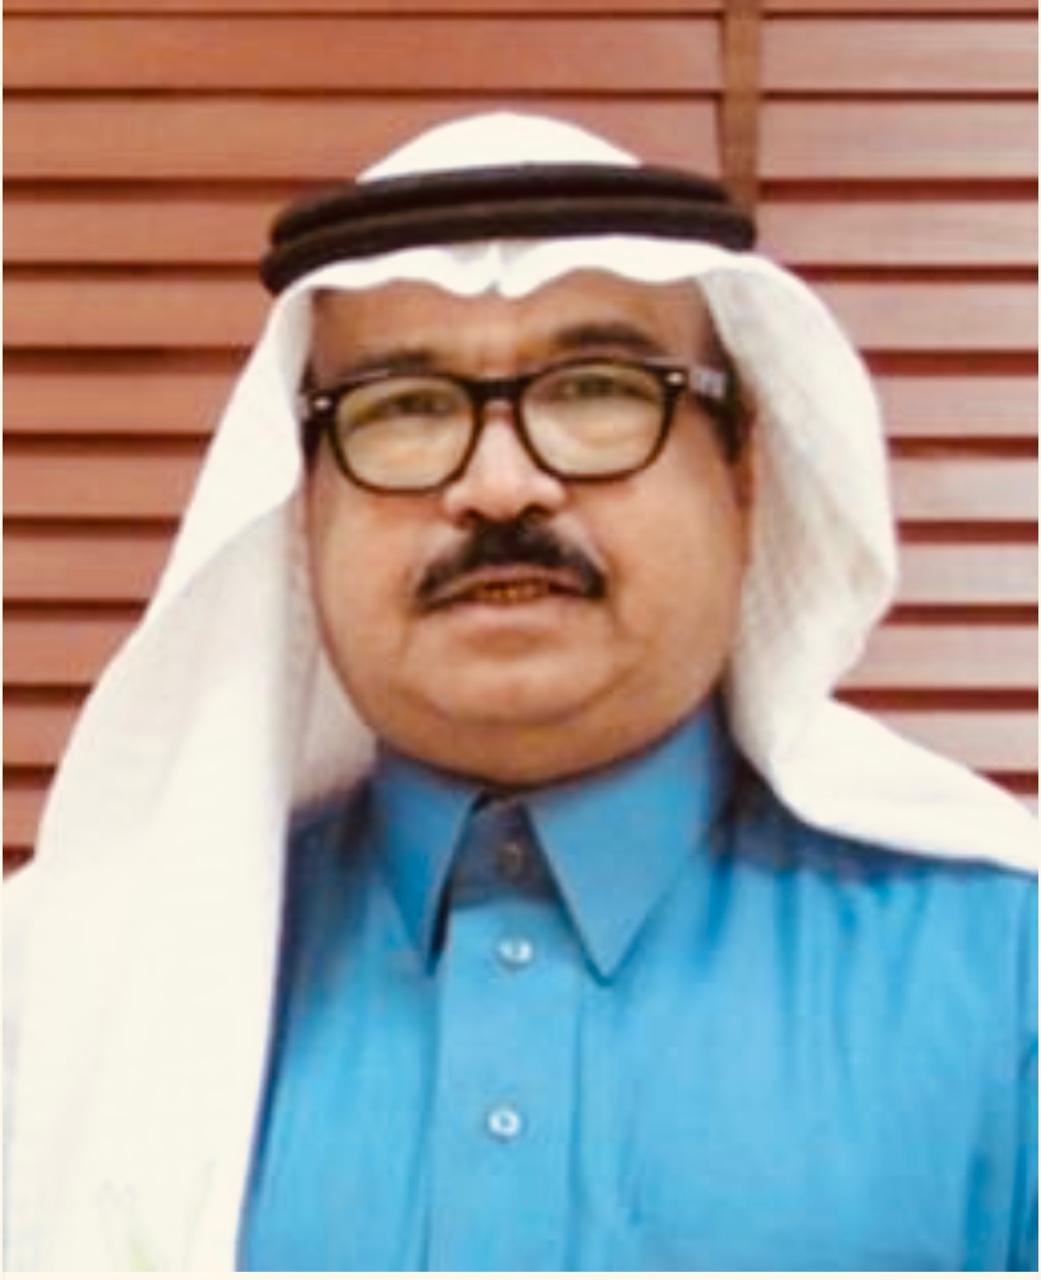 الدكتور عثمان الربيعة والإنجازات الصحية